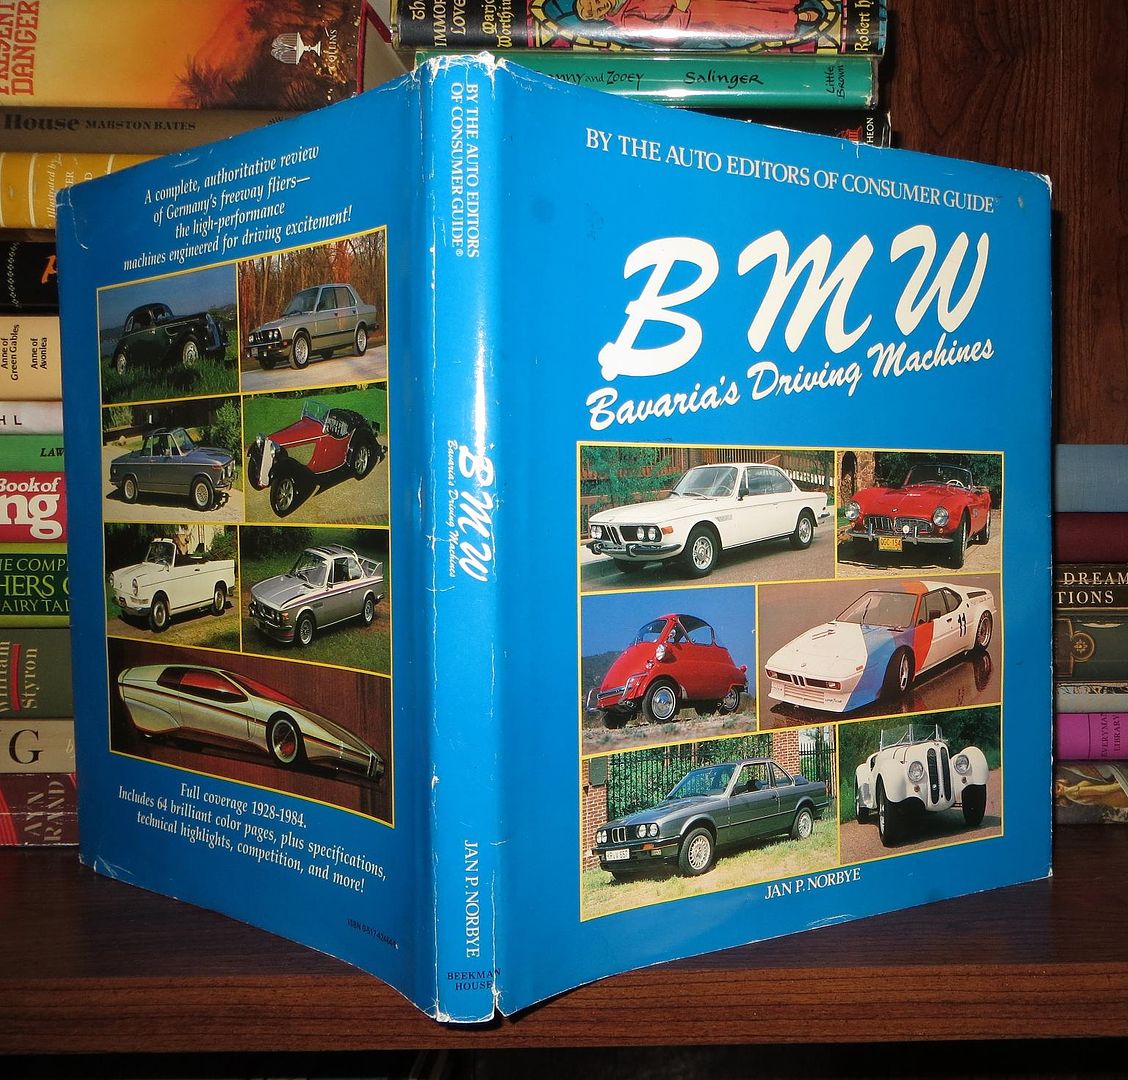 NORBYE, JAN, P. - Bmw Bavarias Driving Machines